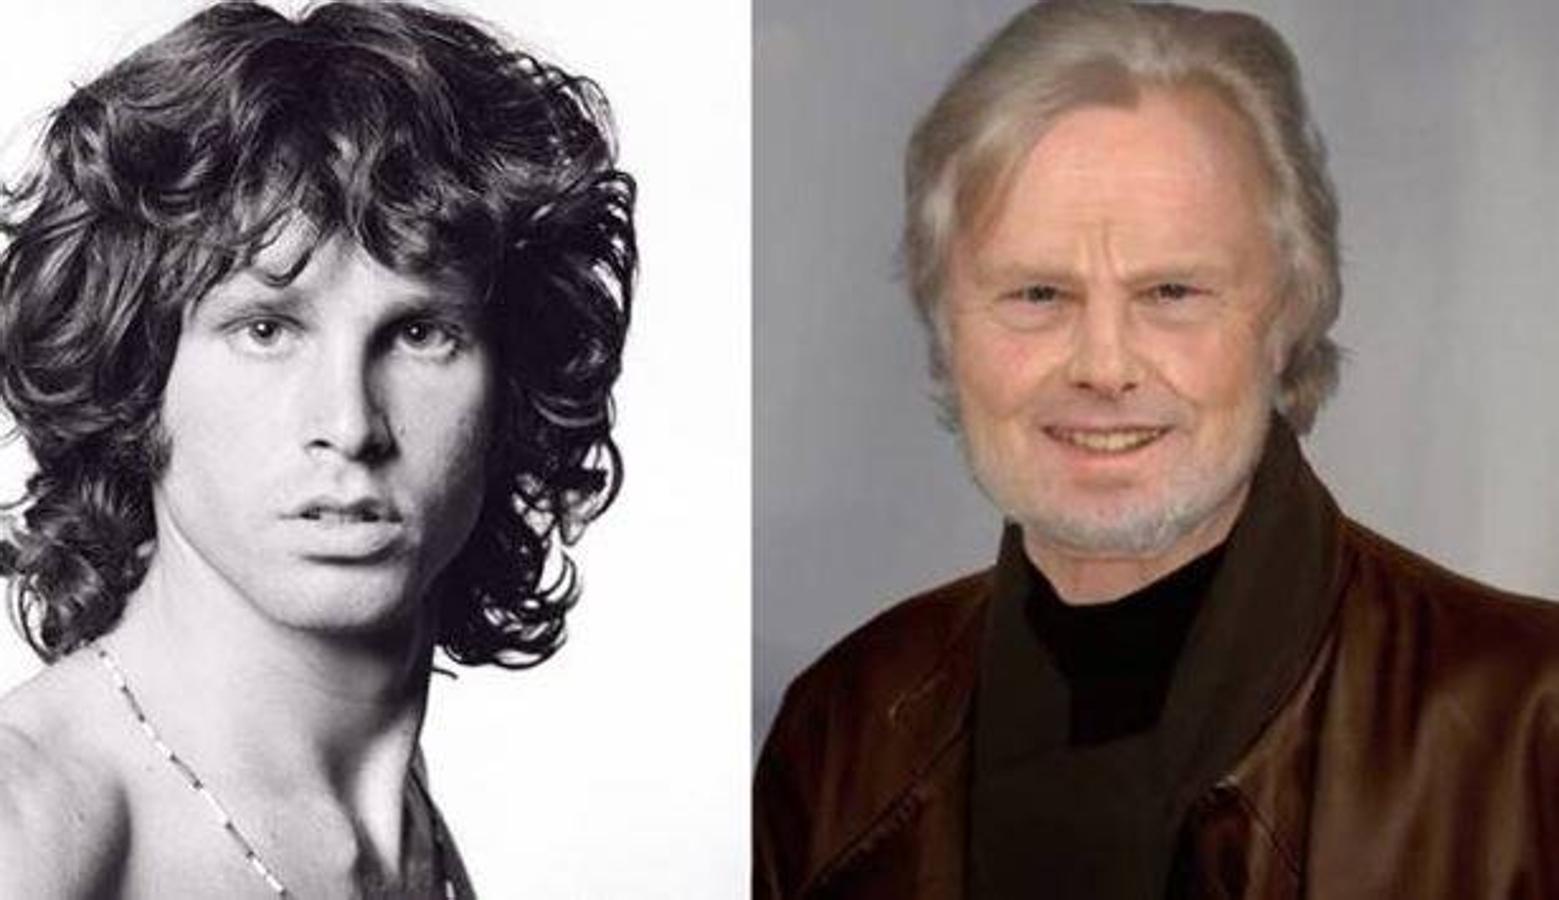 Jim Morrison. Vocalista de The Doors. La mañana del 3 de julio de 197, su esposa Pamela Courson lo encontró muerto en la bañera de su piso del barrio de Le Marais en París, al parecer, de un ataque cardíaco provocado por una sobredosis de drogas. Tenía 27 años.